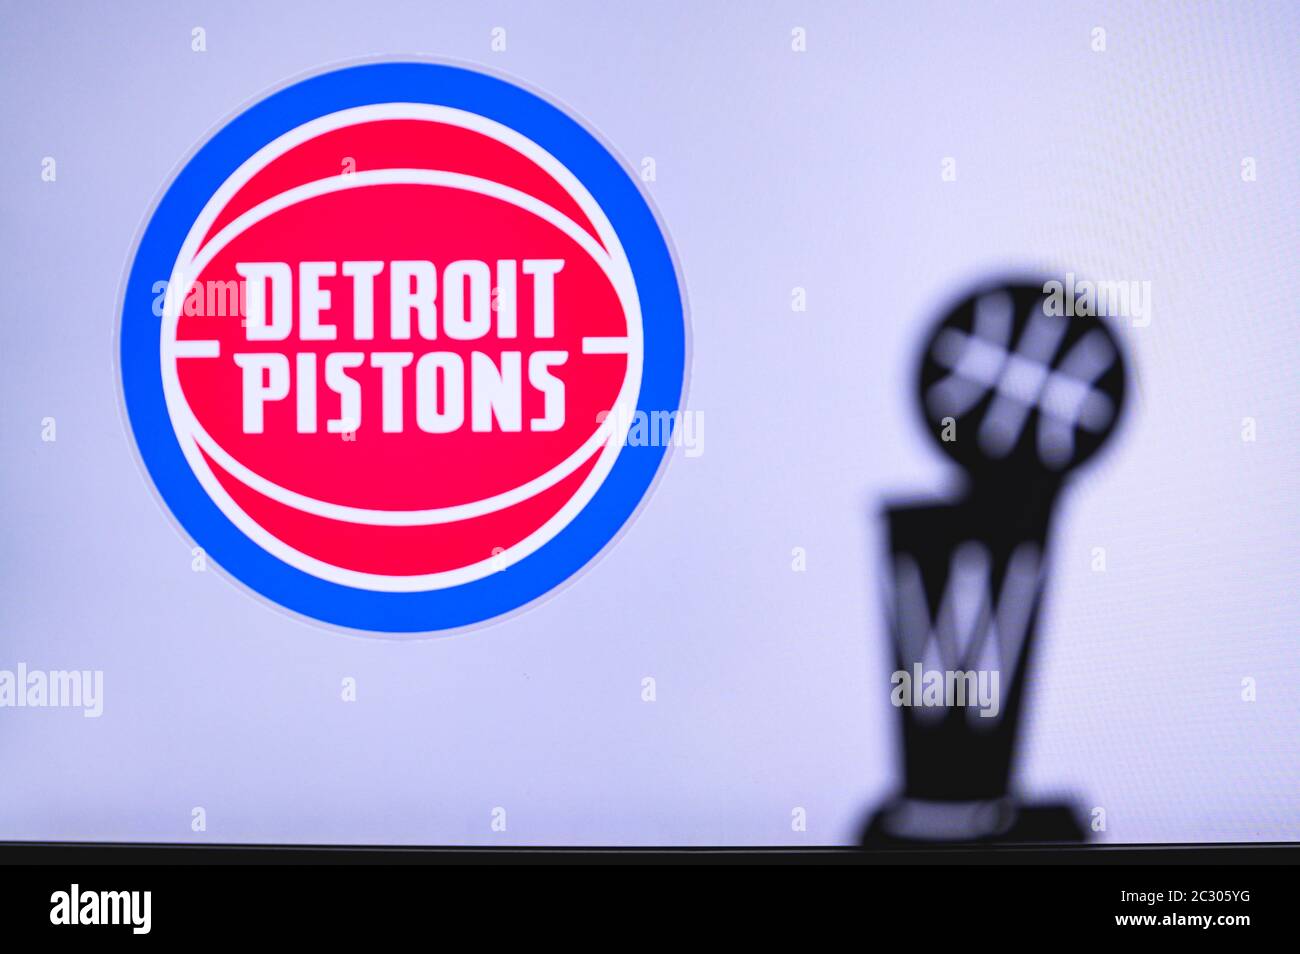 NEW YORK, USA, 18. JUN 2020: Detroit Pistons Basketball Club auf der weißen Leinwand. Silhouette der NBA-Trophäe im Vordergrund. Stockfoto